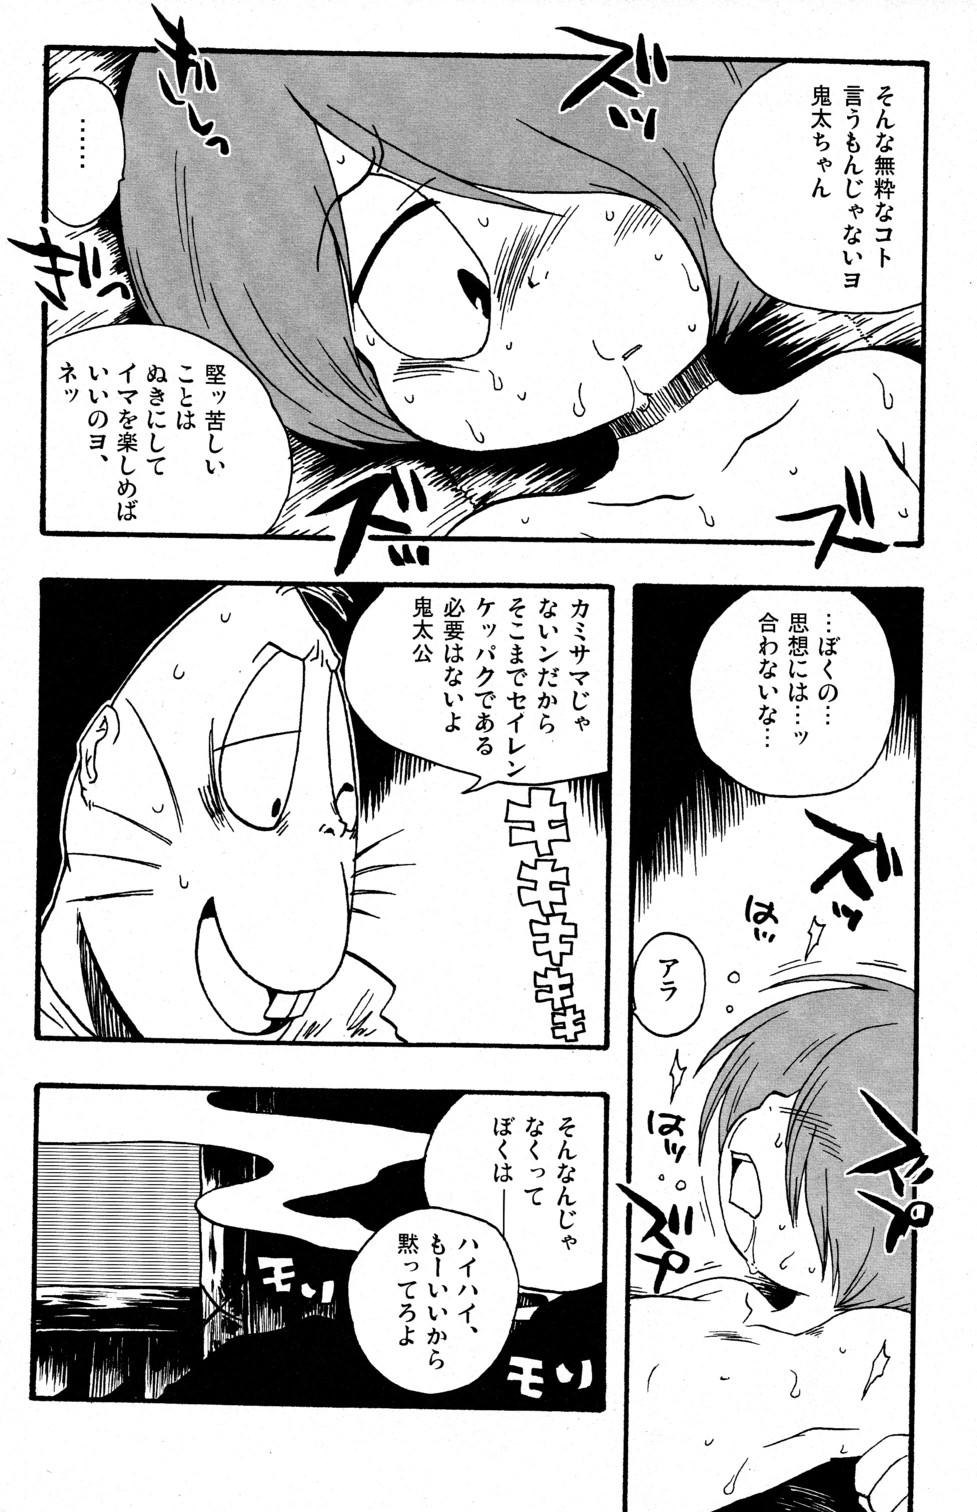 Pornstars Kawaisa Amatte Nantoka Hyakubai - Gegege no kitarou Monster - Page 8